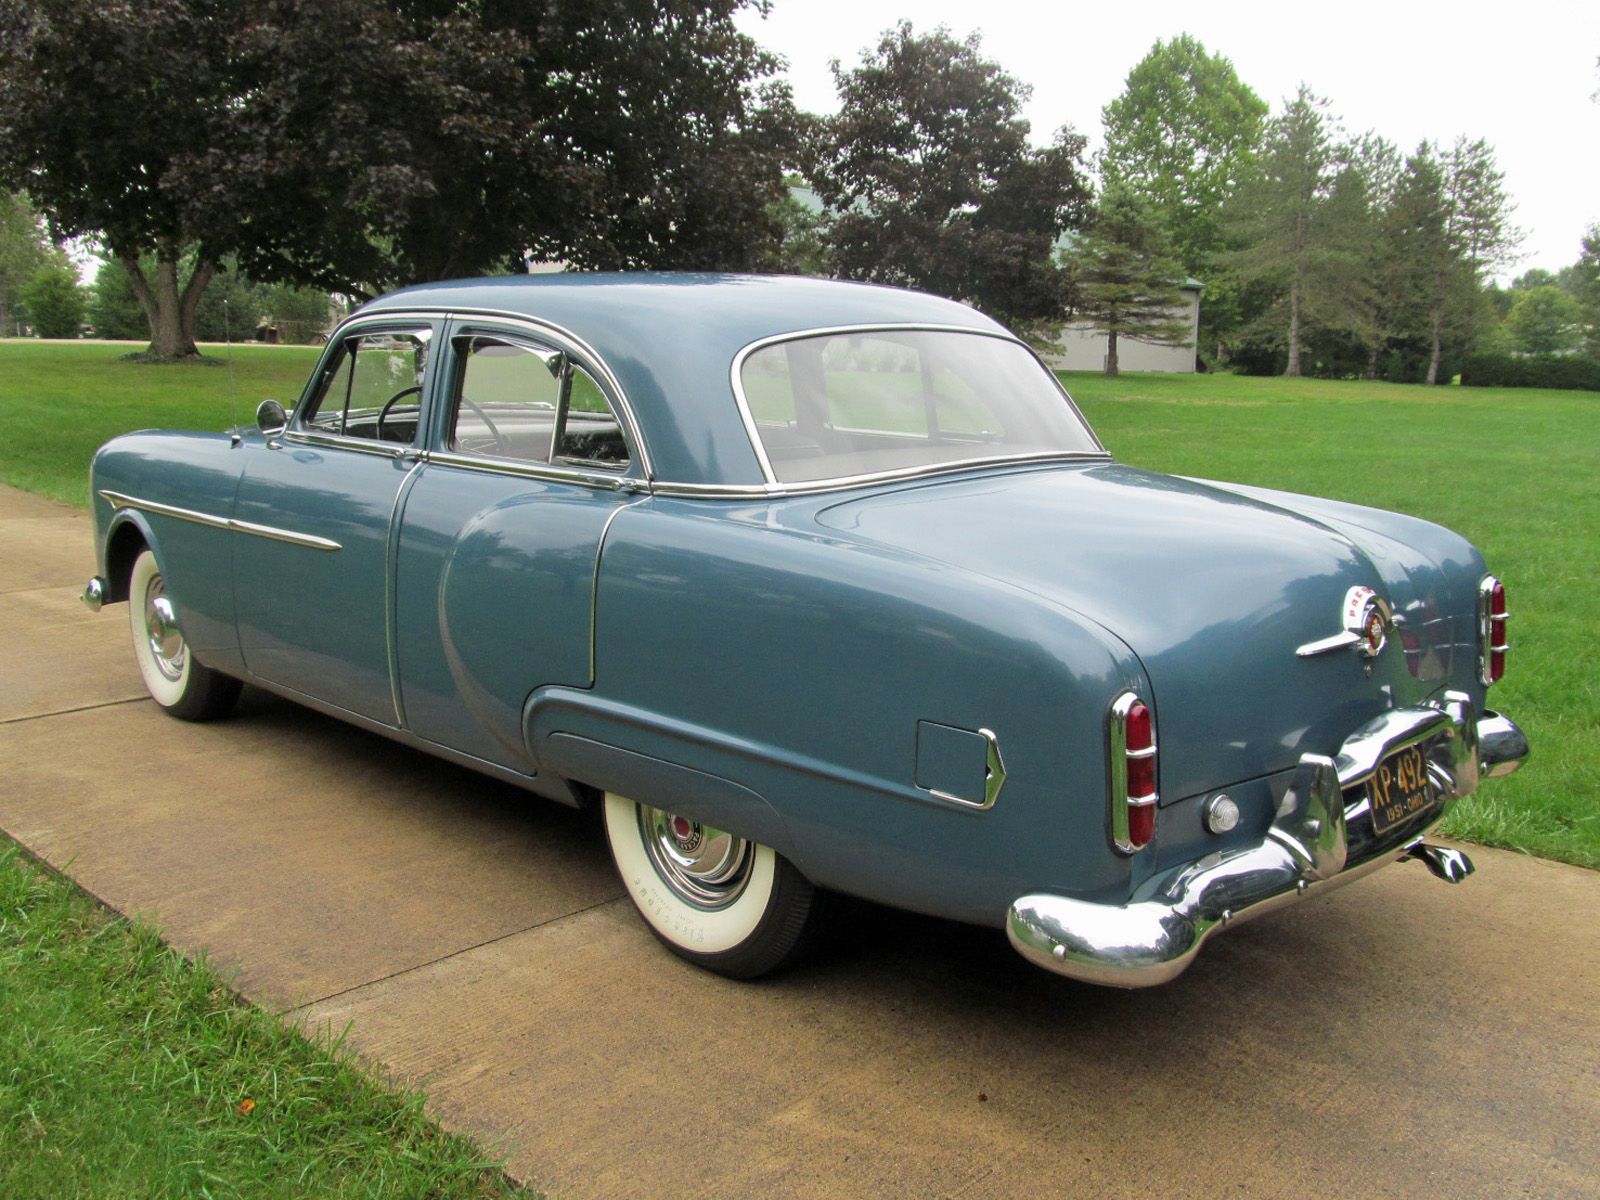 Packard 200 Sedan Wallpapers